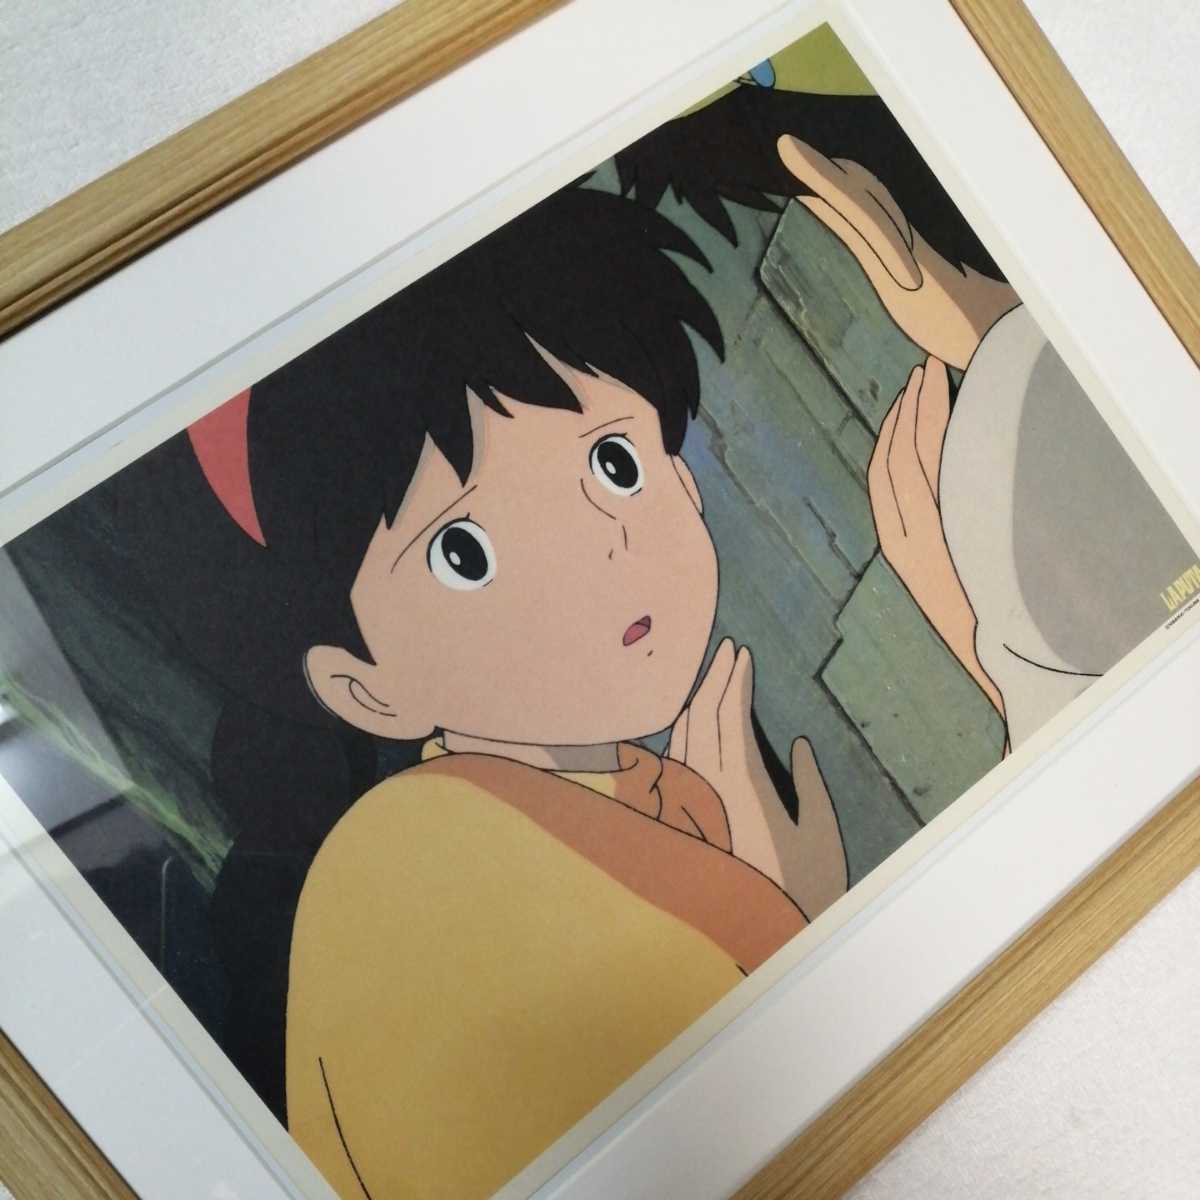 Более 30 лет назад [В то время] Студия Ghibli Небесный замок [Предмет в рамке] Постер, настенная картина, репродукция оригинальной картины, осмотр) сел покраска, открытка, Хаяо Миядзаки, комиксы, аниме товары, другие